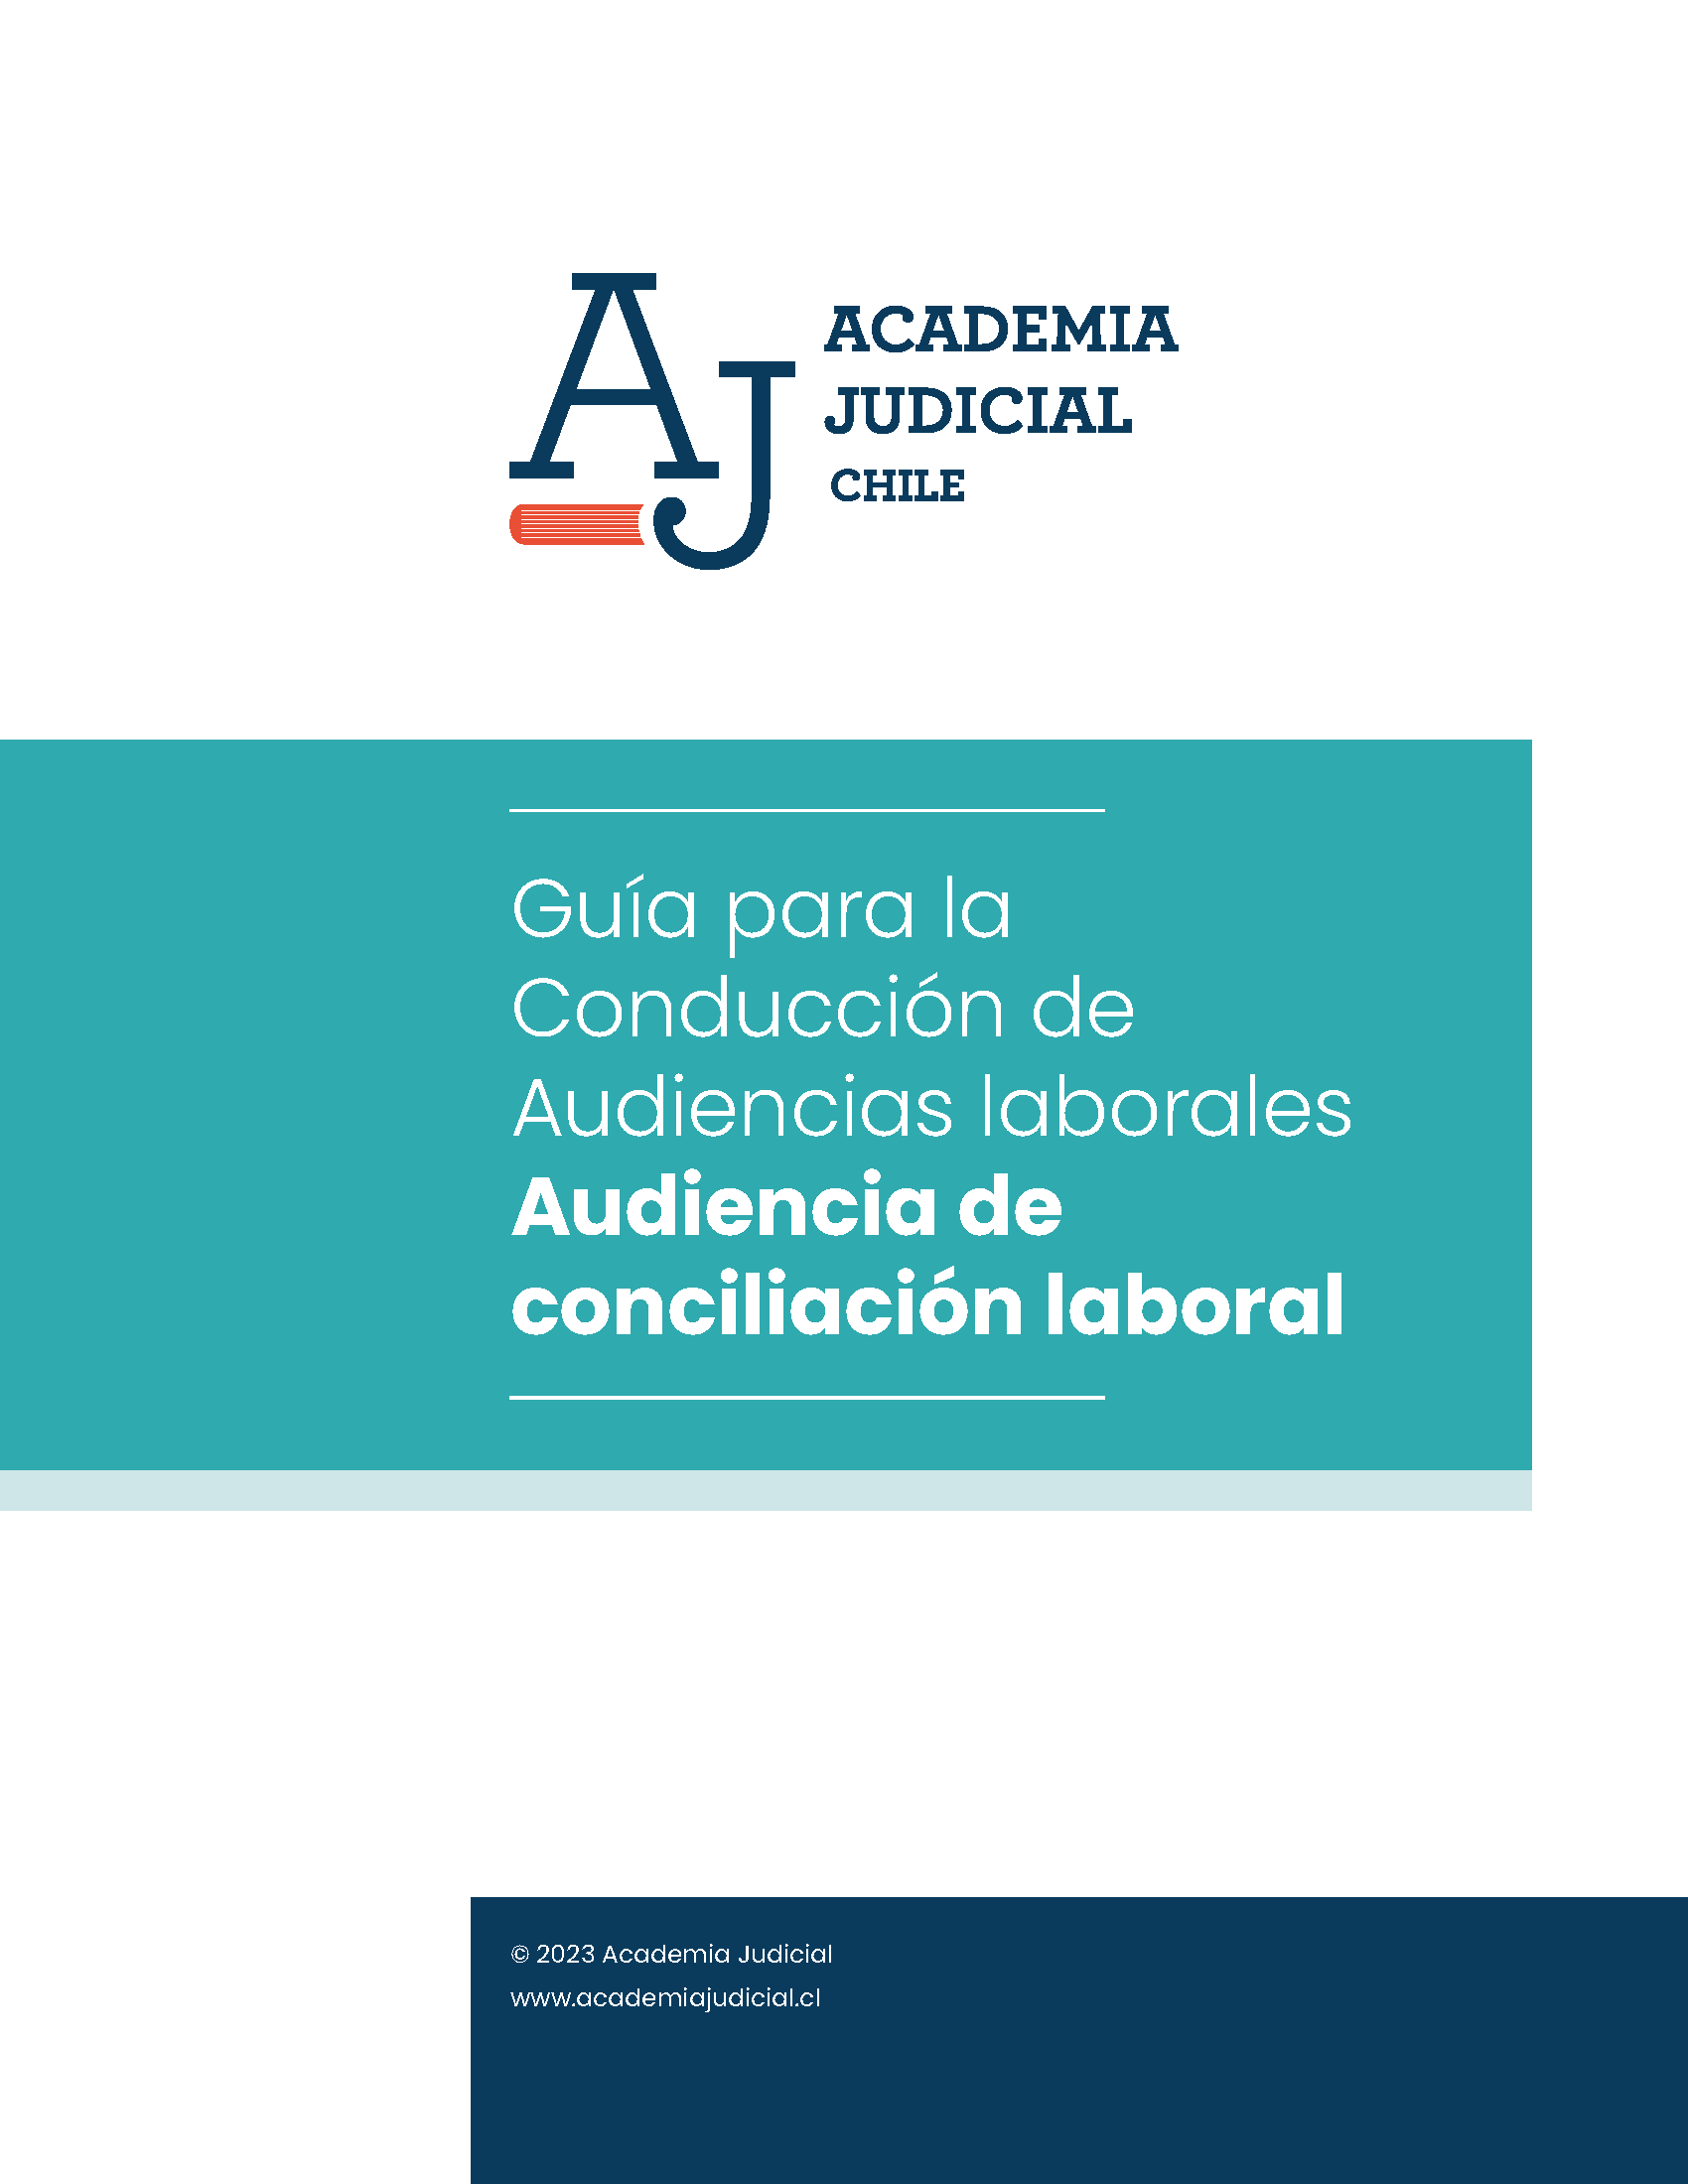 Guía para la conducción de la Audiencia de Conciliación Laboral